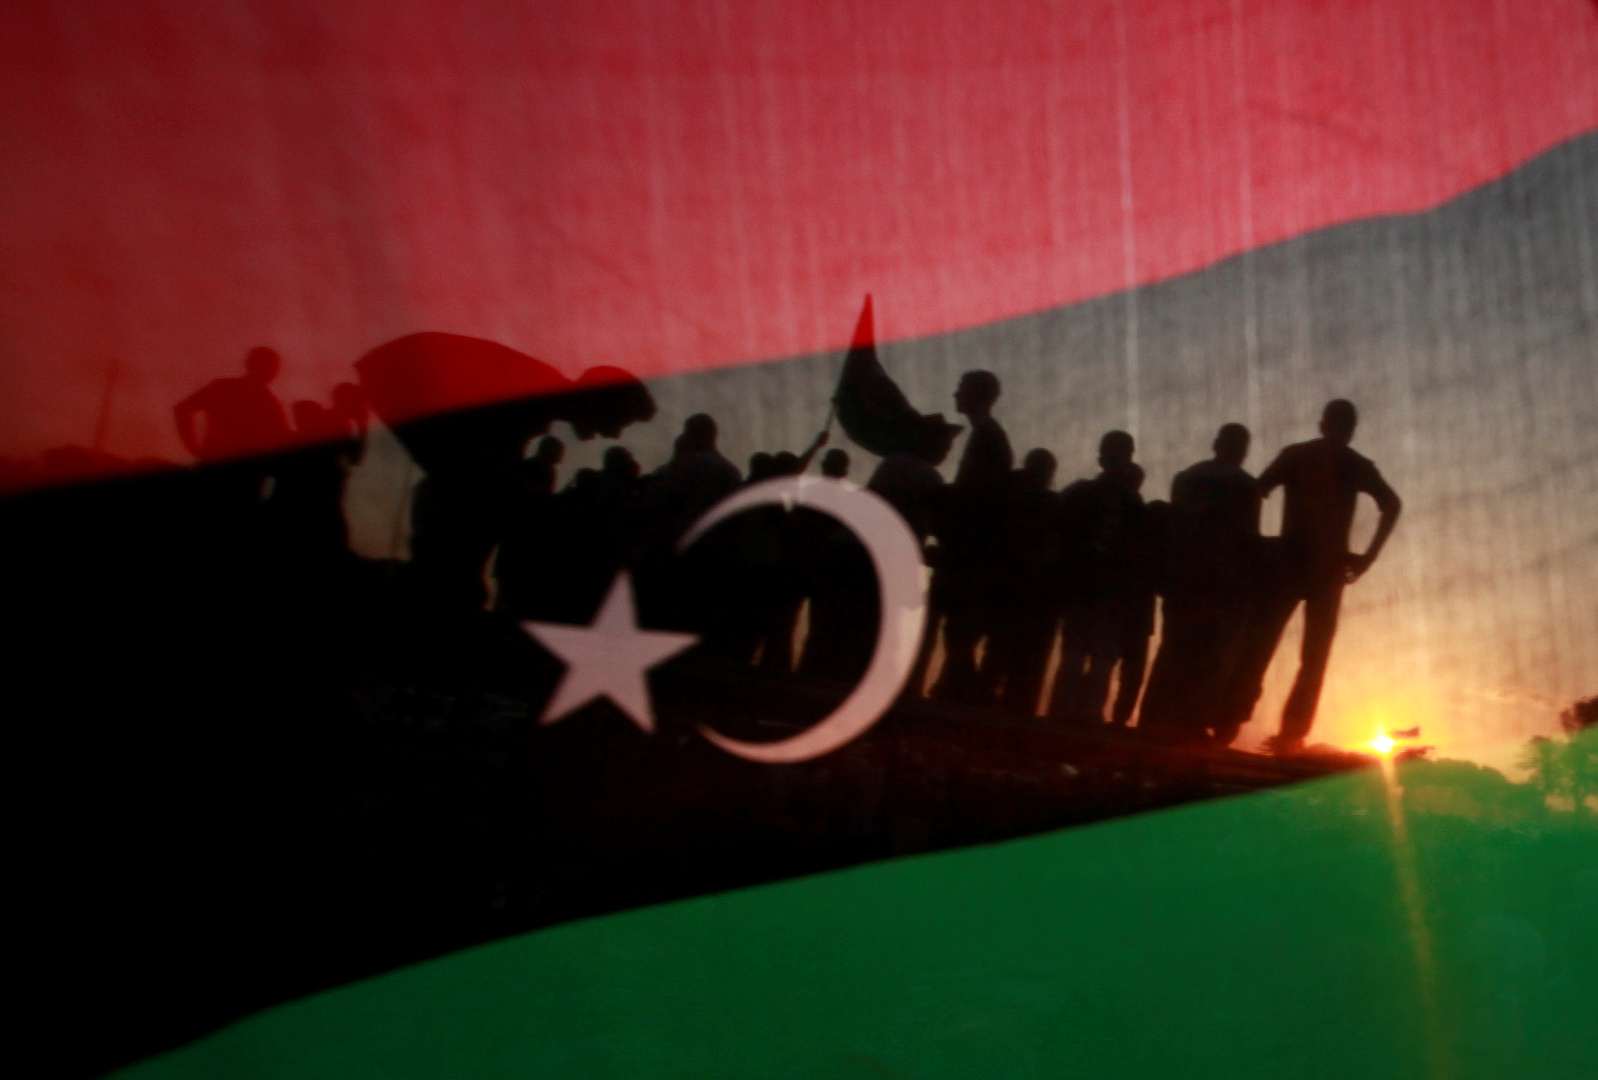 موسكو: غياب السلام المستدام في ليبيا يهدد باستمرار تدويل النزاع